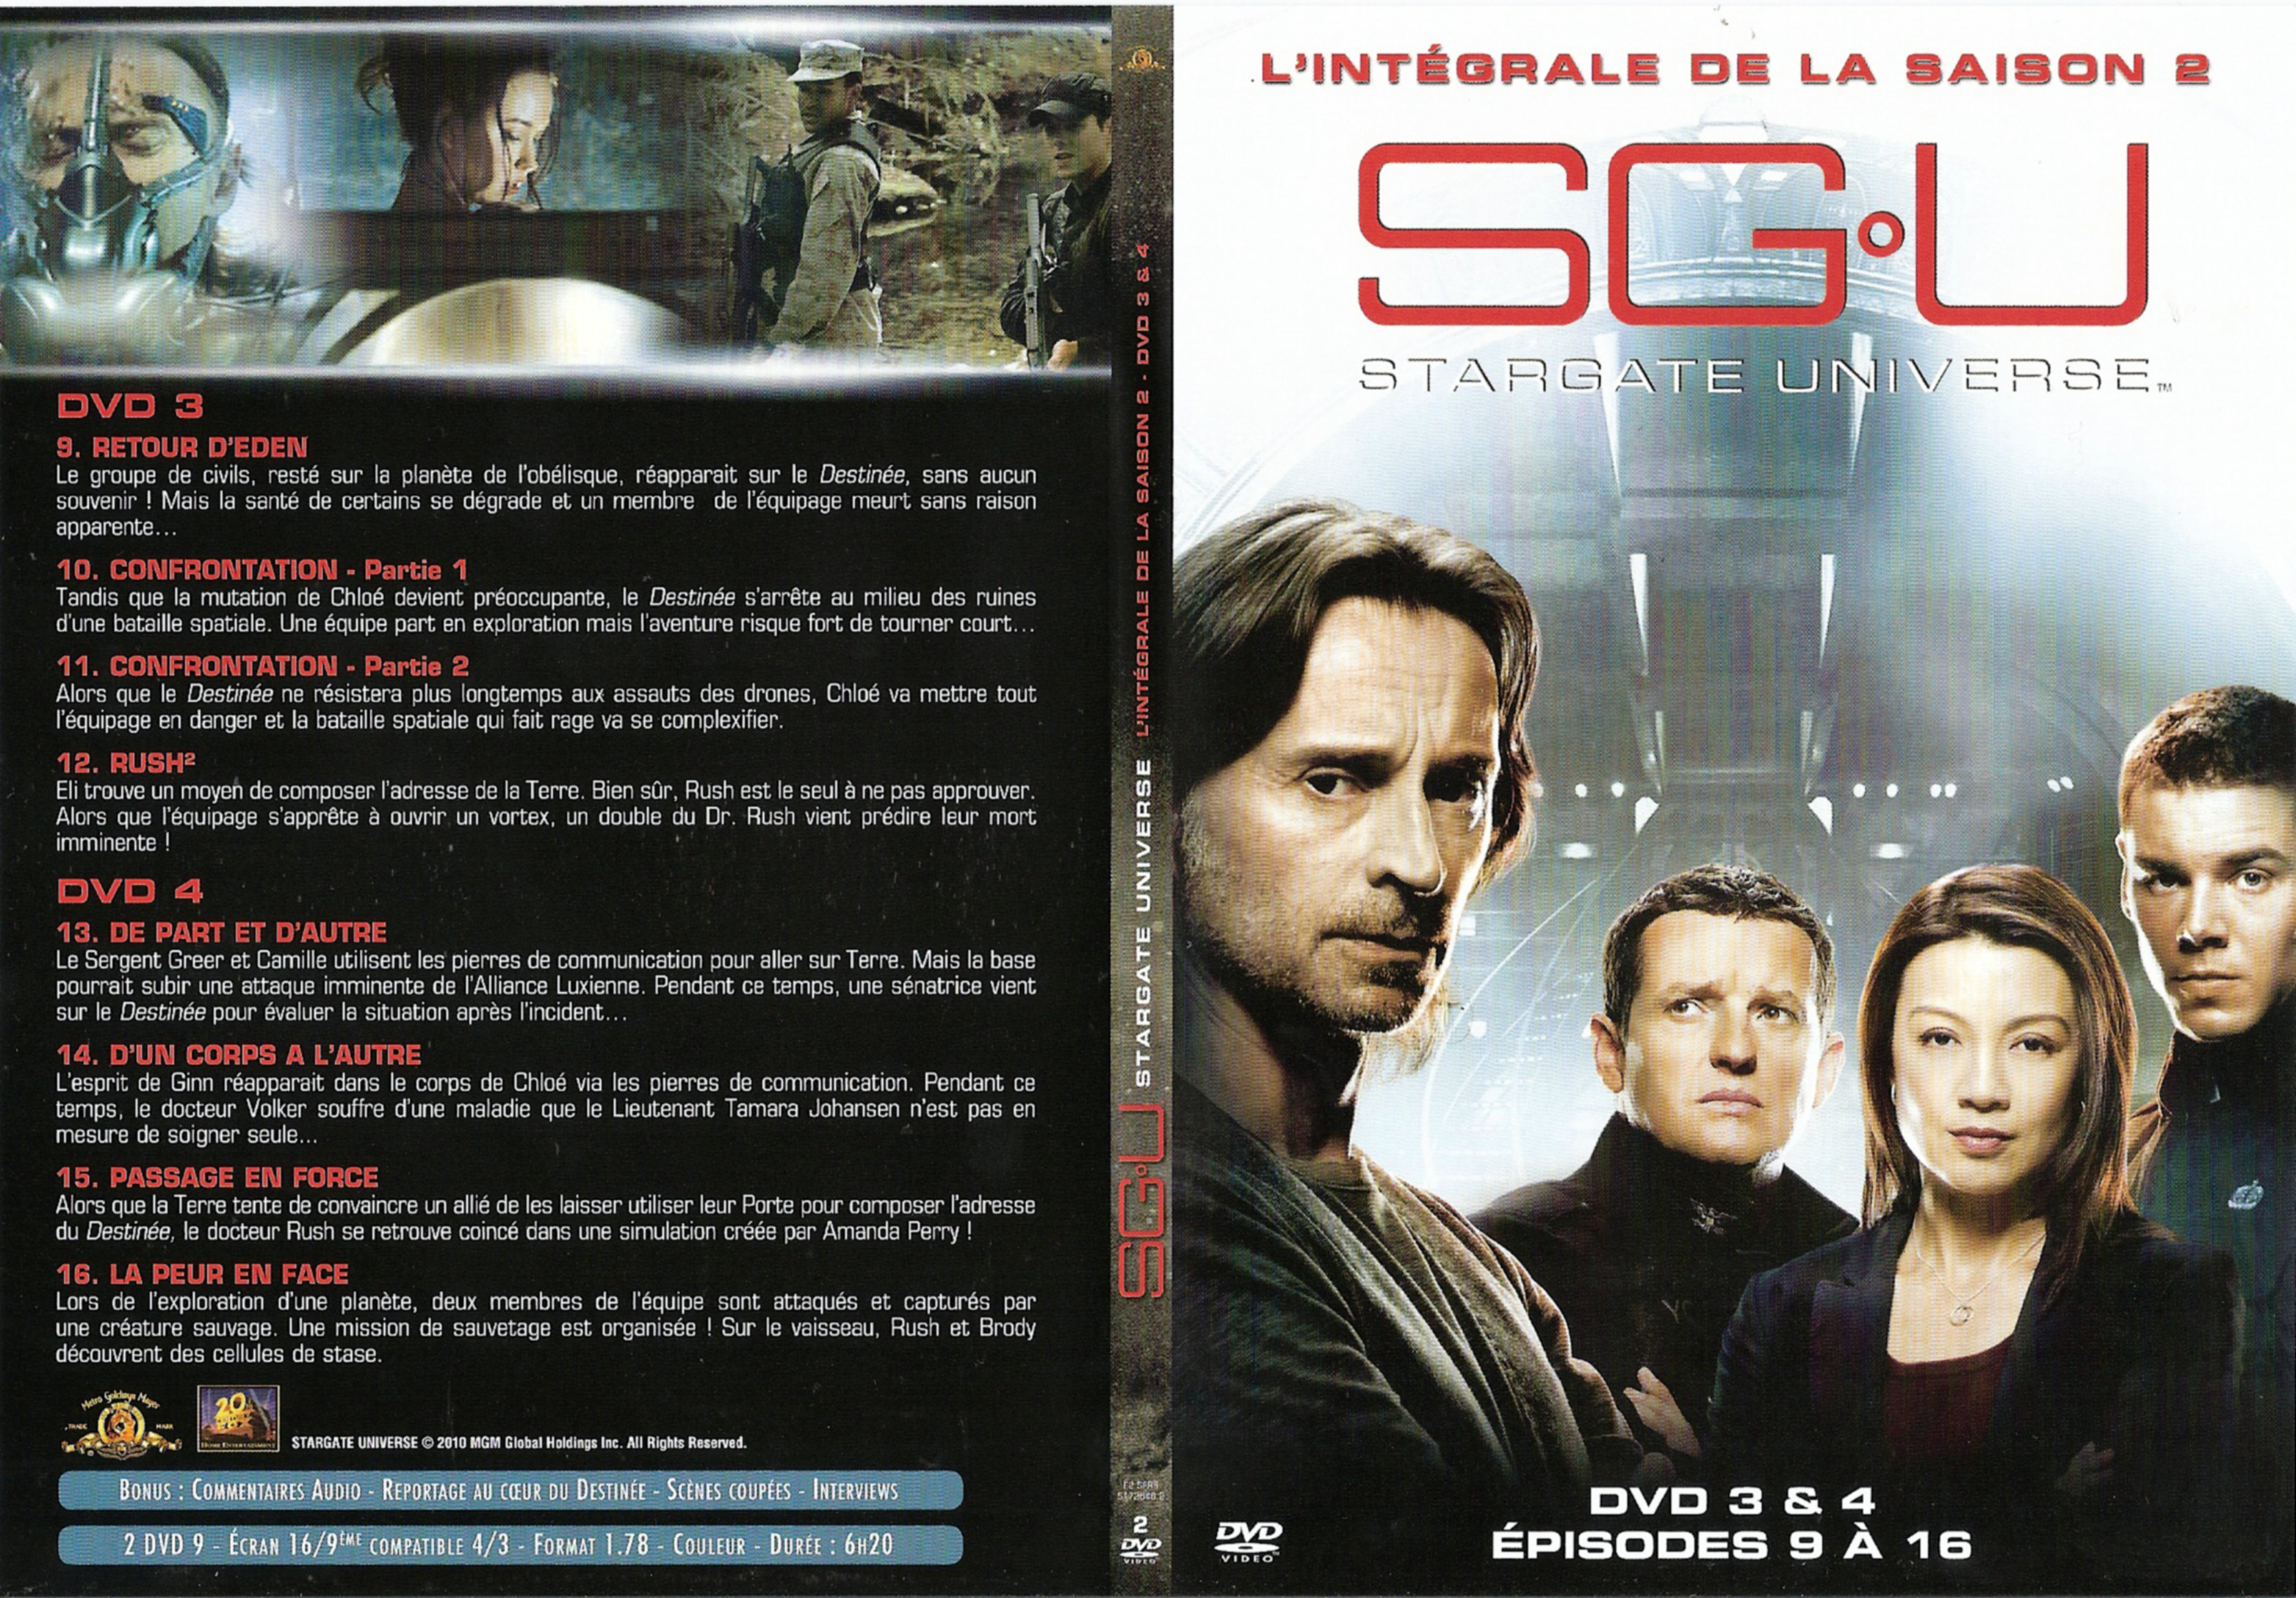 Jaquette DVD Stargate Universe Saison 2 DVD 3